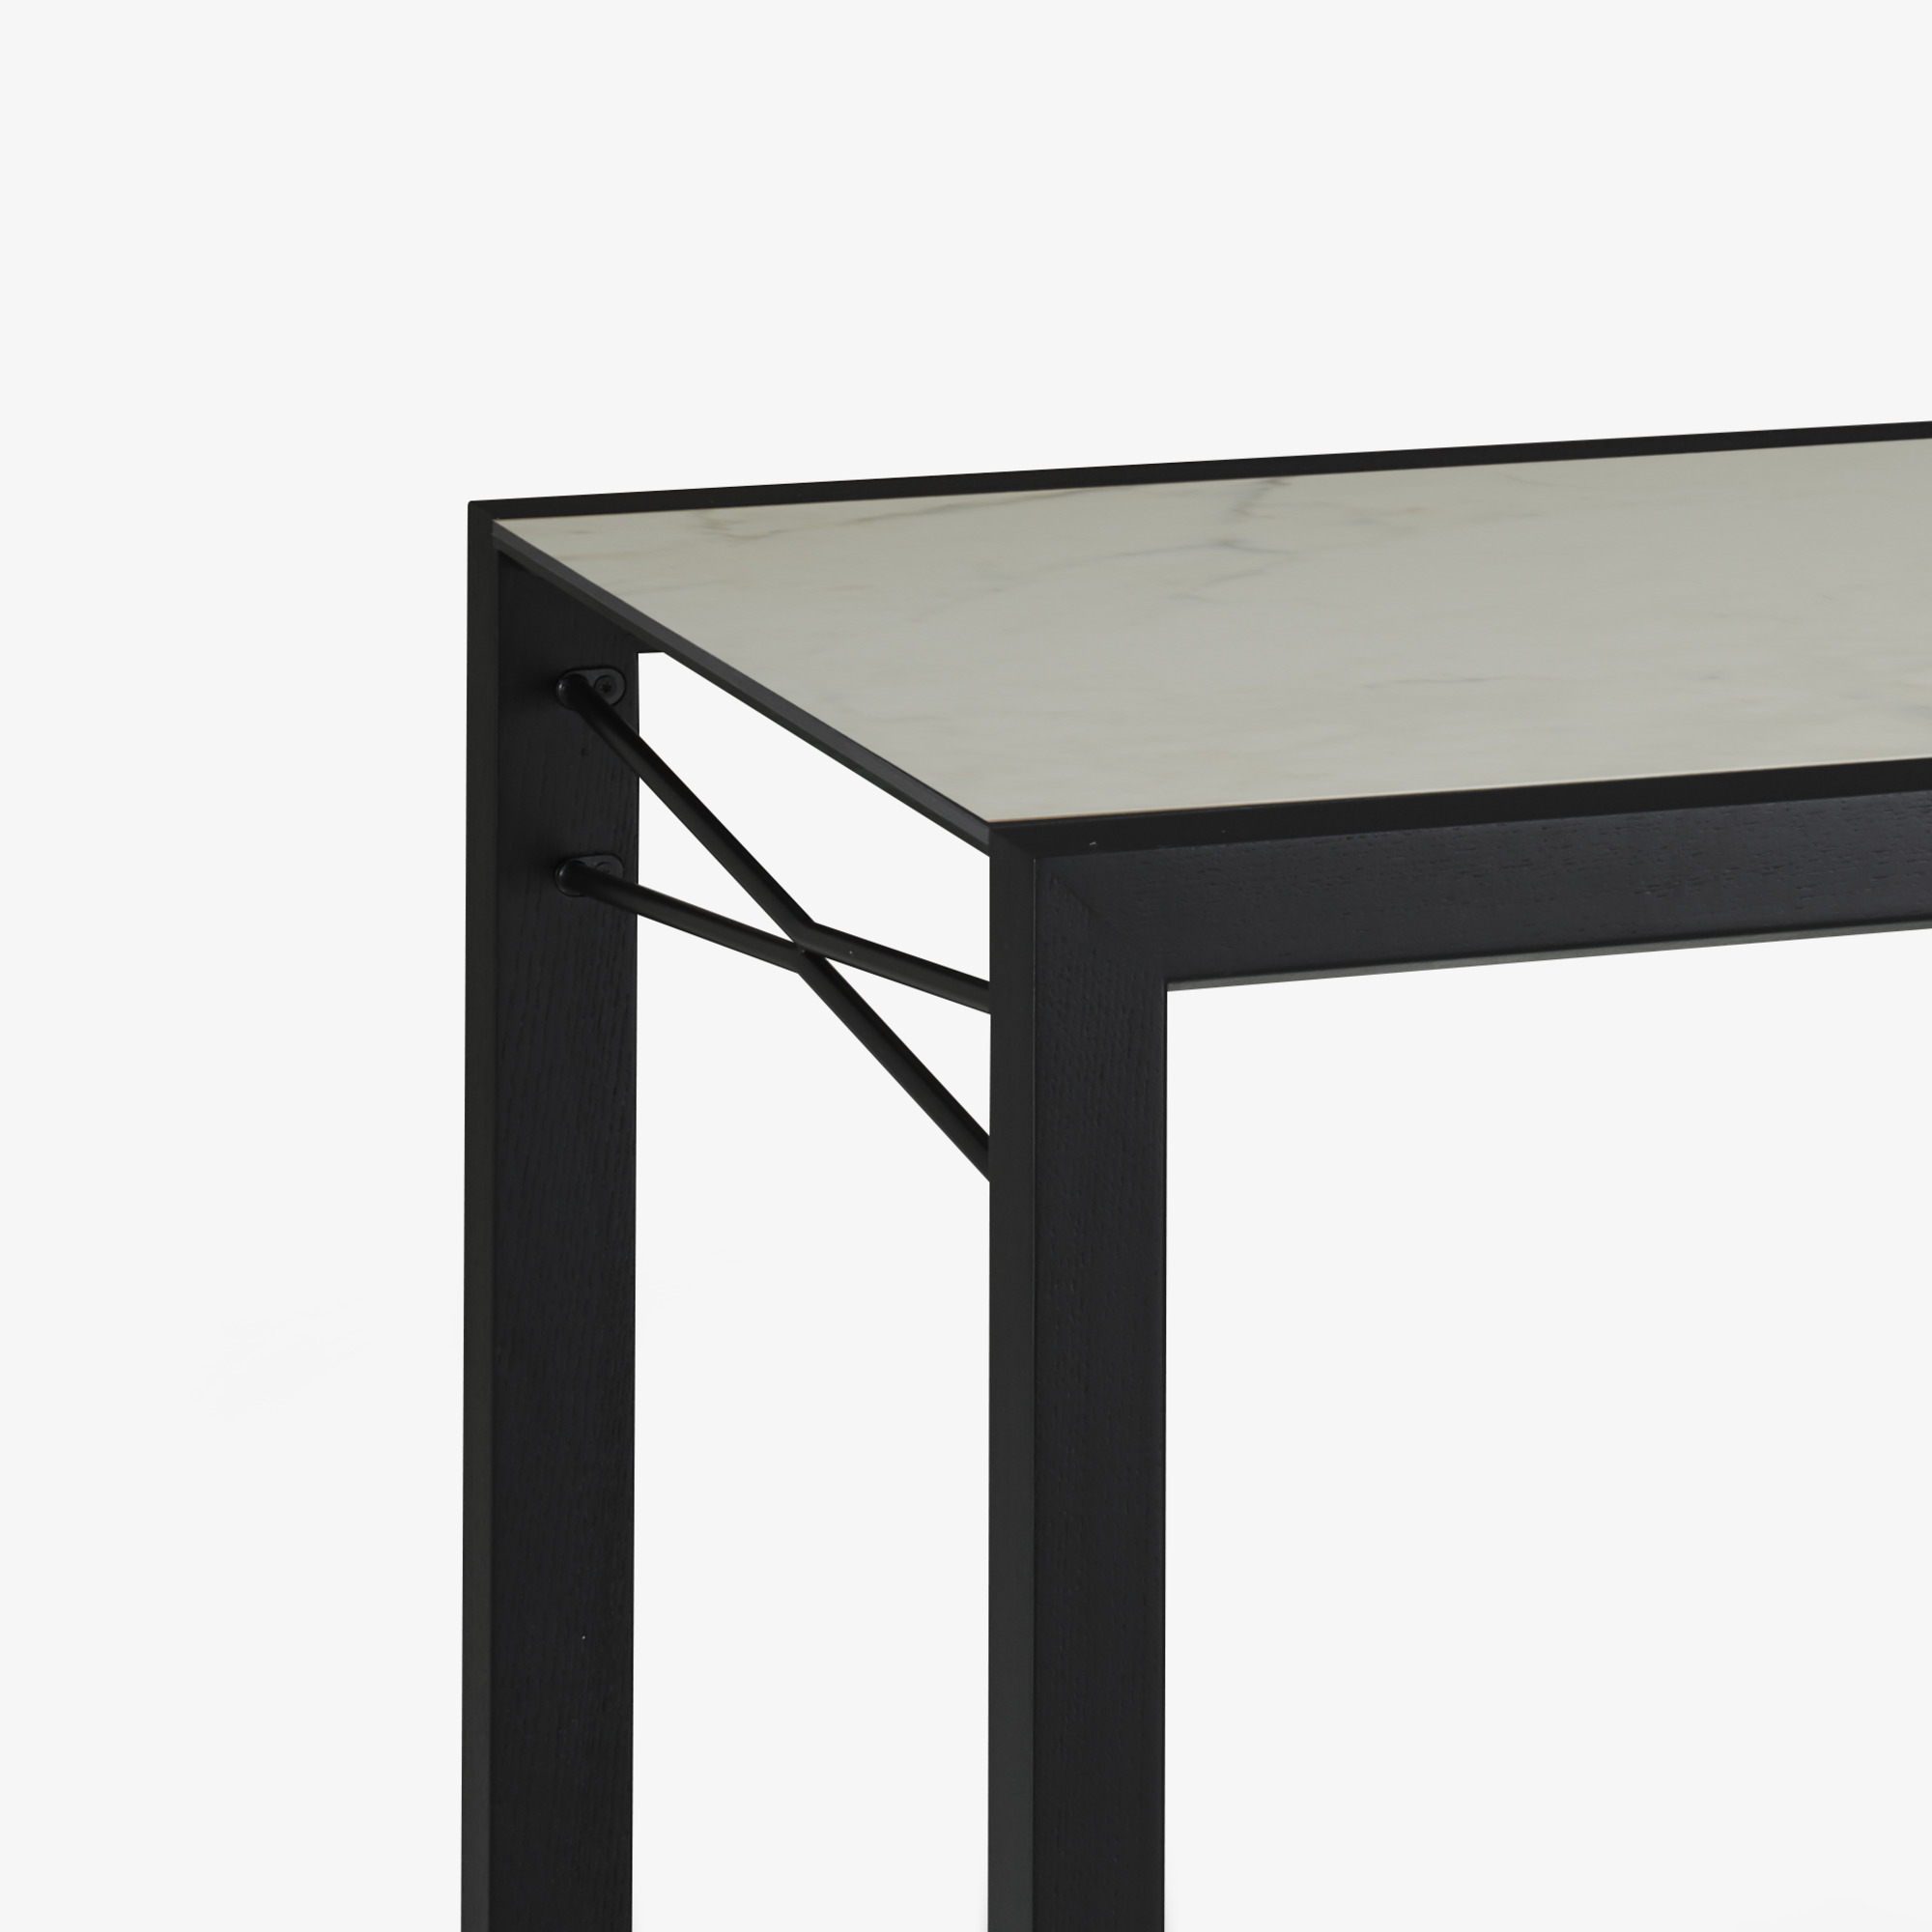 Image 餐桌 桌面由白色大理石效果的太空瓷制成 黑色白蜡木底座 5